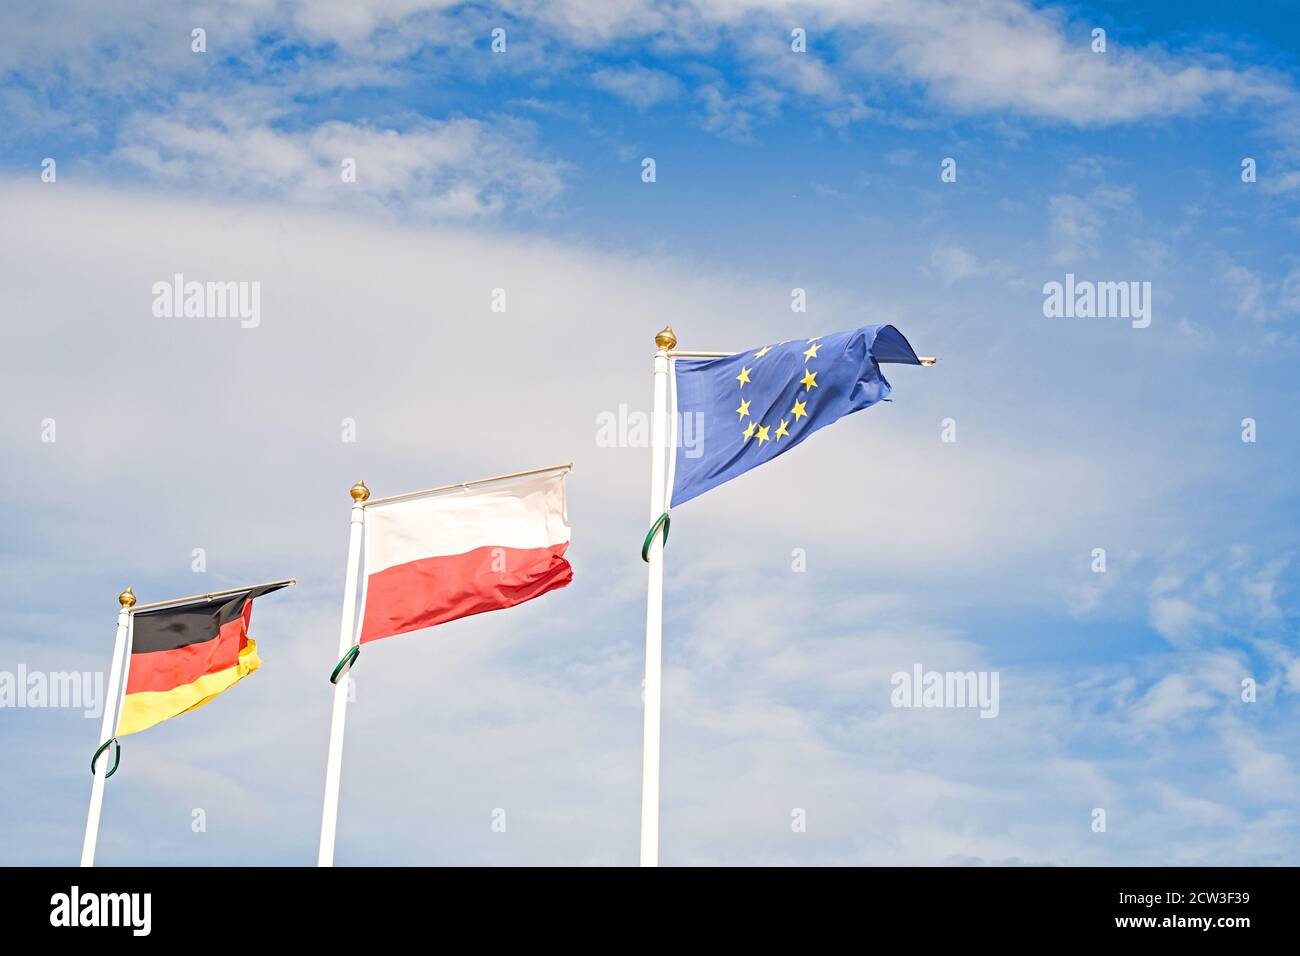 Bandiera della Germania, della Polonia e dell'Unione europea. Politica, uguaglianza sociale ed economia Foto Stock